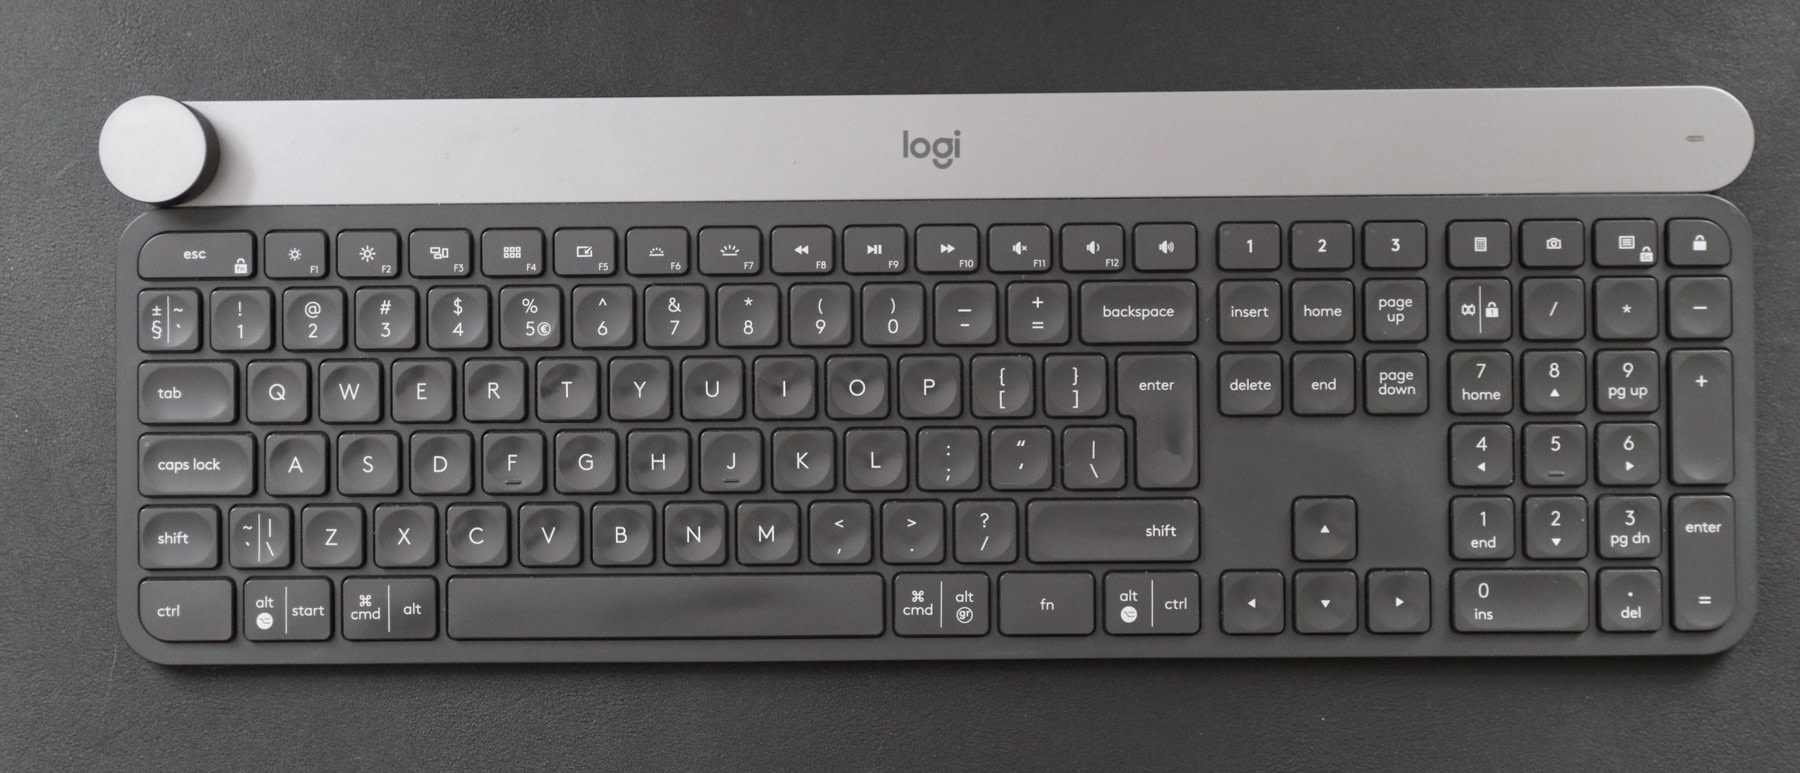 brandsmart wireless mac compatible keyboard